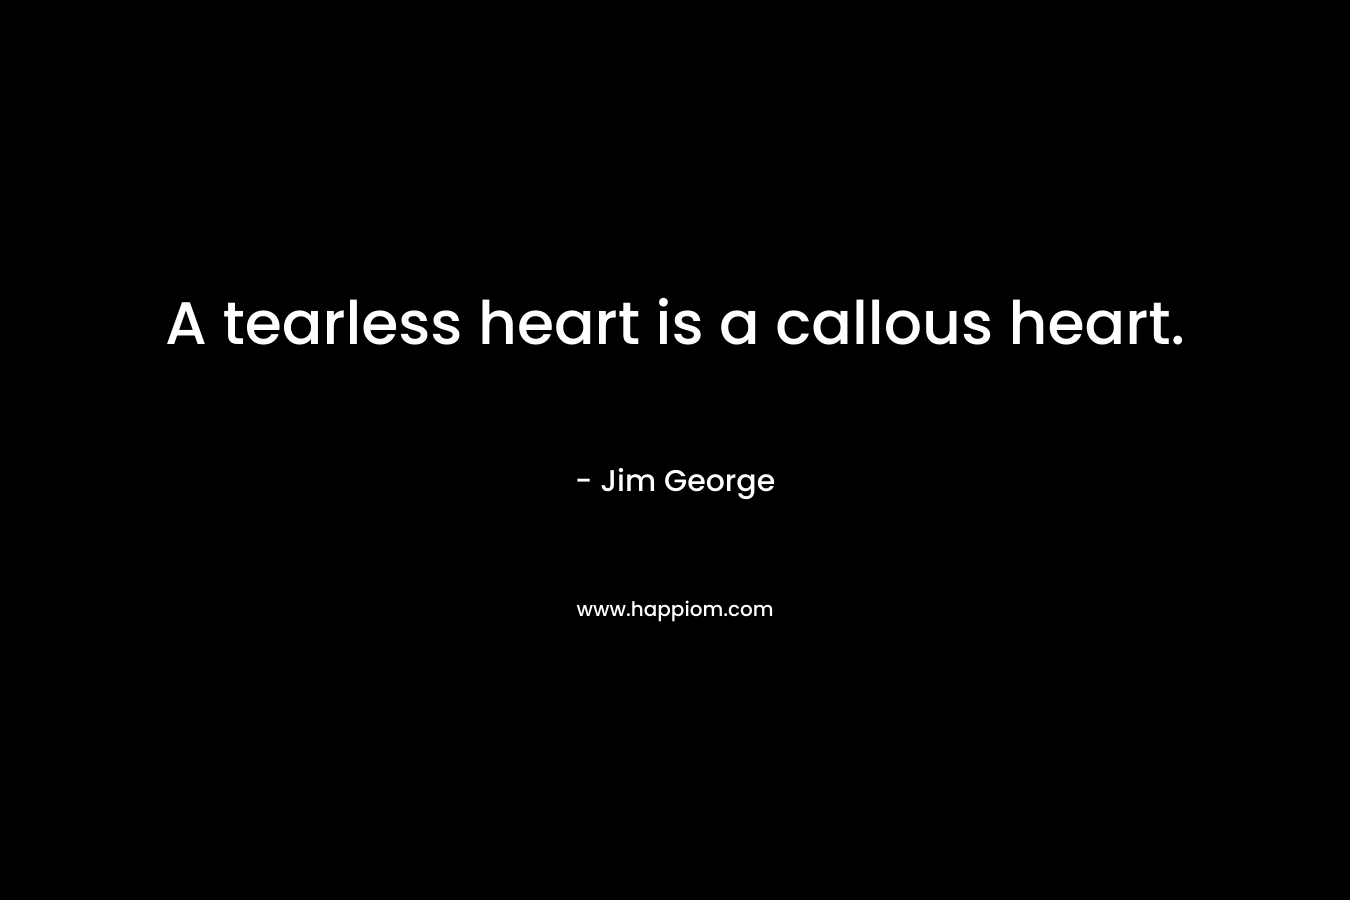 A tearless heart is a callous heart.